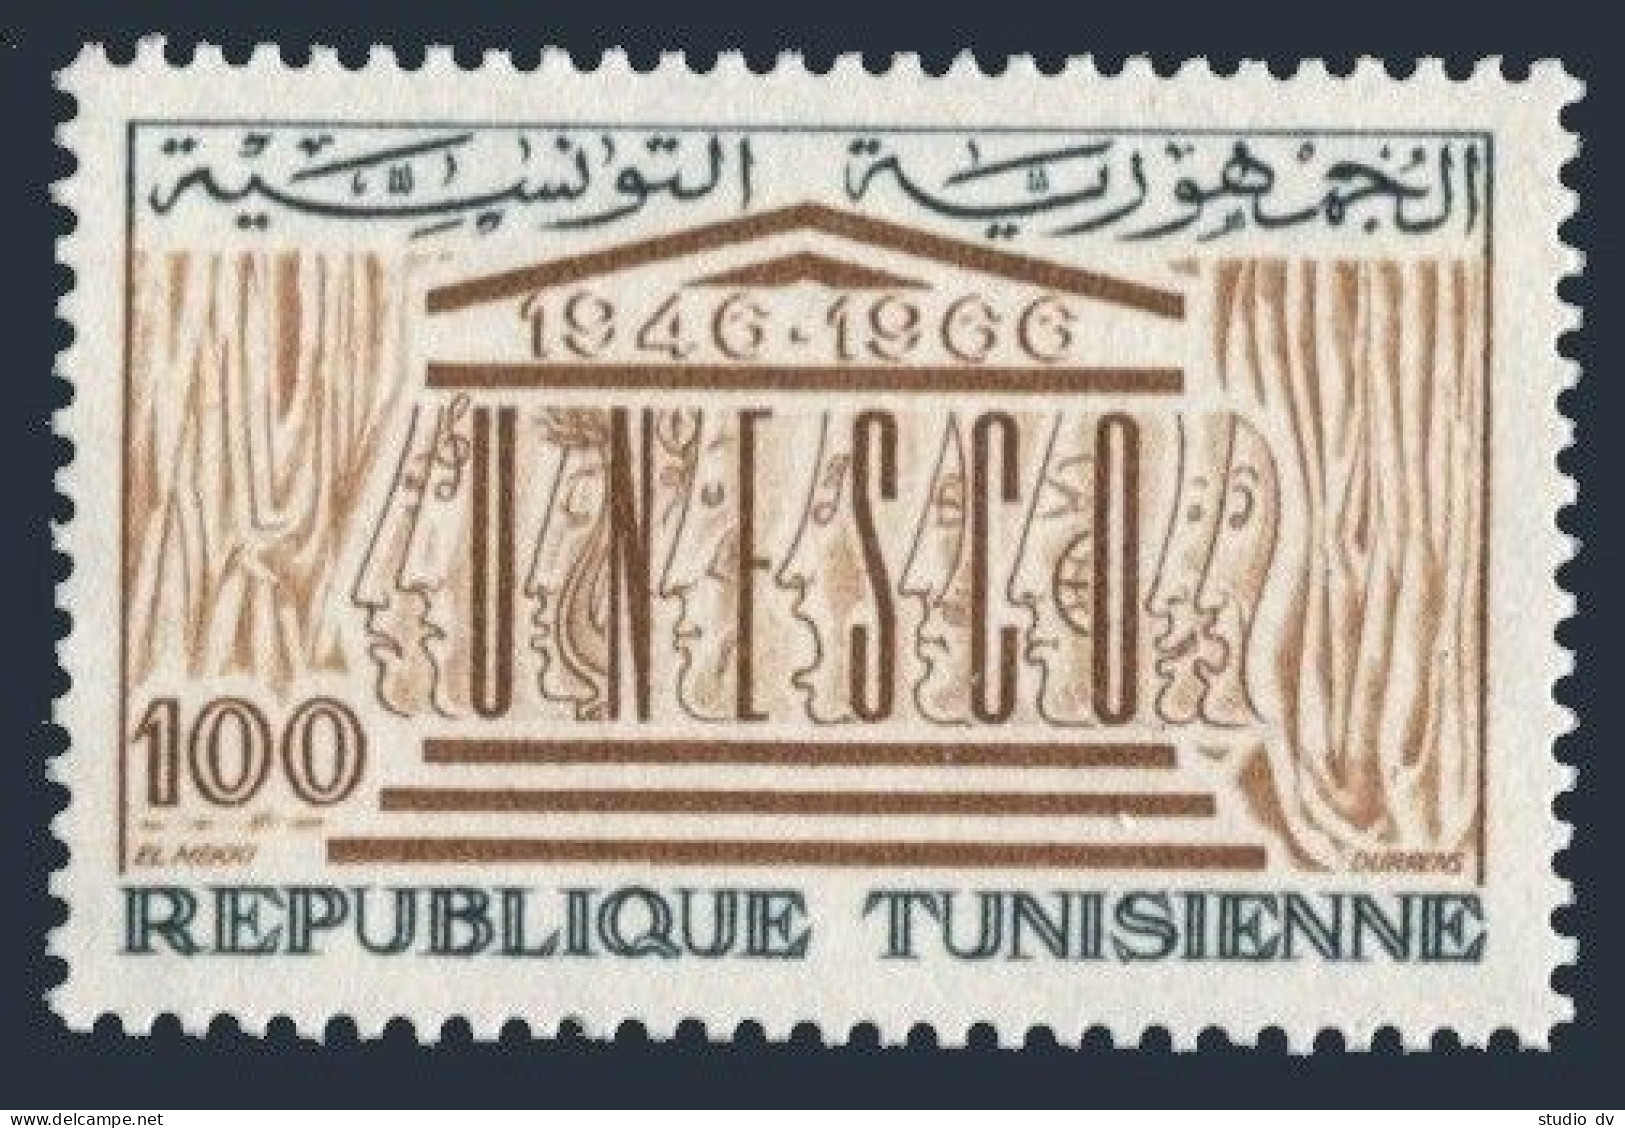 Tunisia 467, MNH. Michel 667. UNESCO, 20th Ann. 1966. - Tunisia